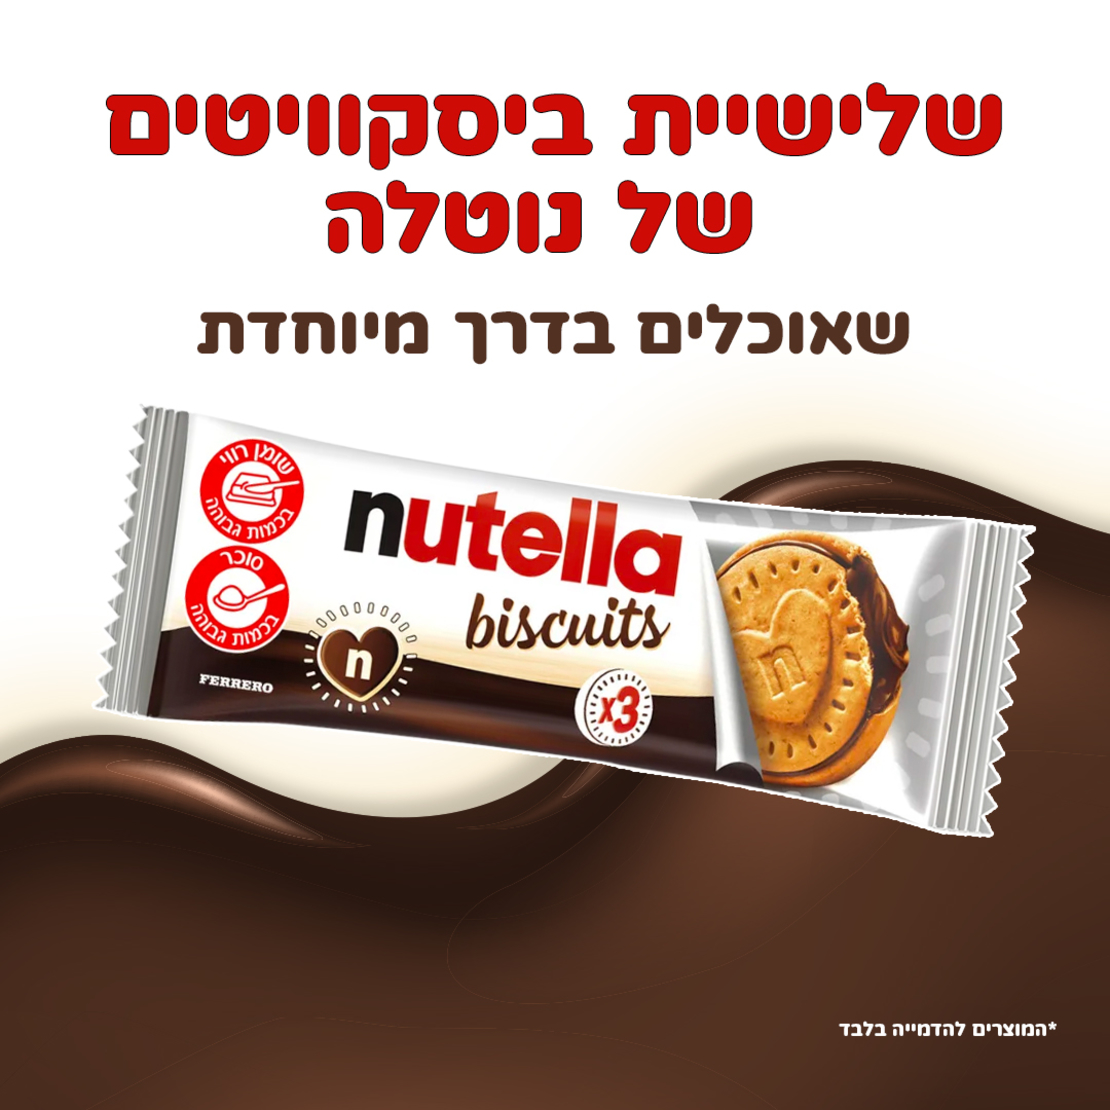 ביסקוויטים של נוטלה - Nutella biscuits